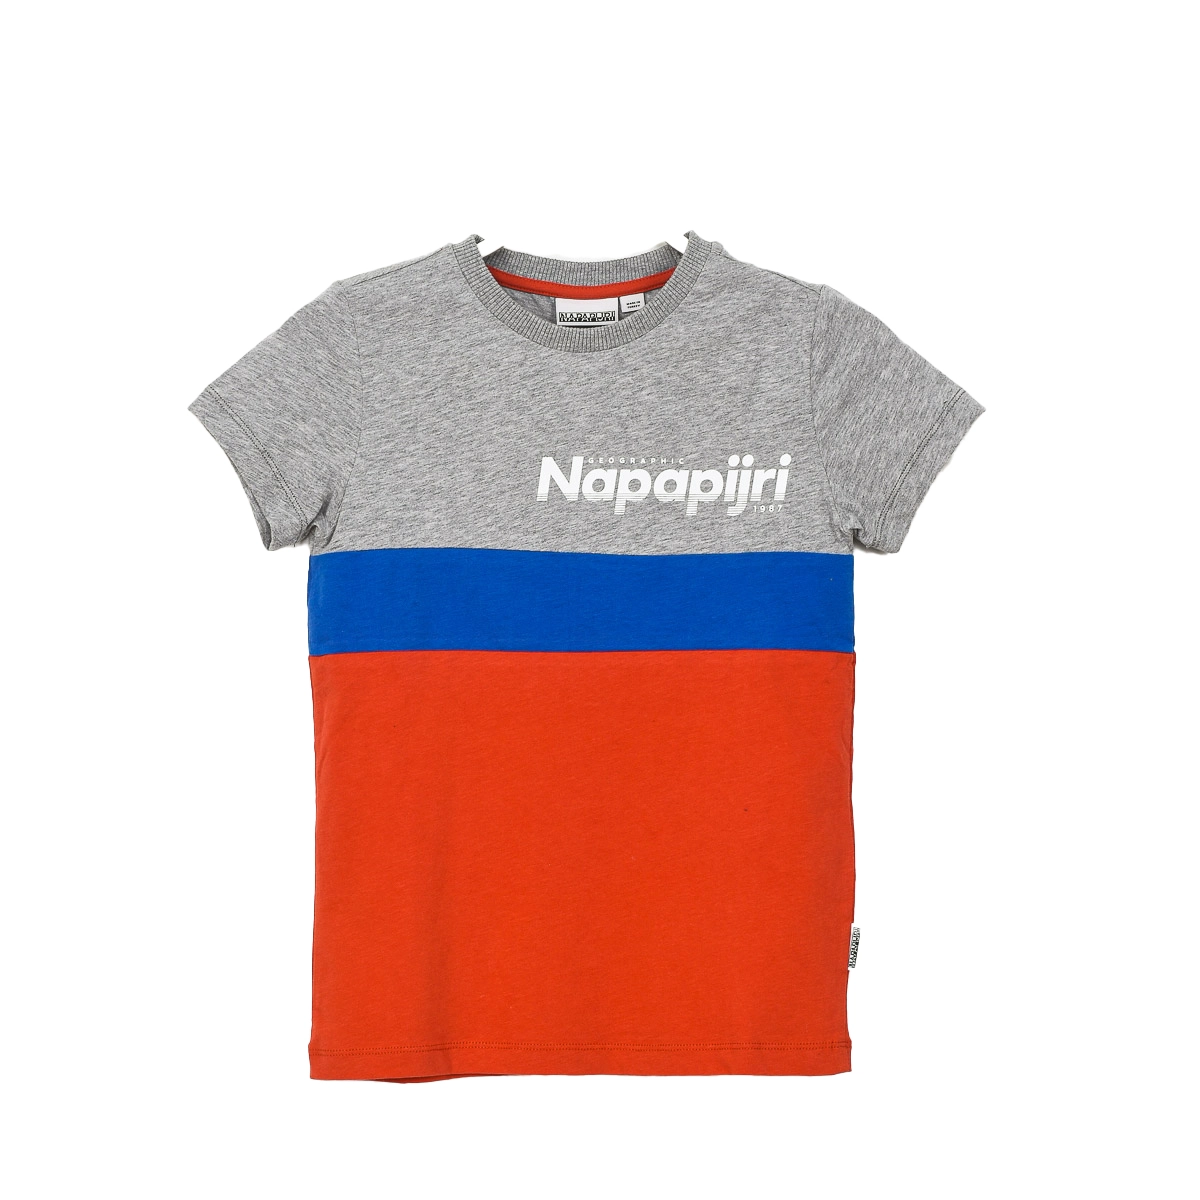 Camiseta de manga corta y cuello redondo Napapijri GA4EQE niño Talla: 8 AÑOS Color: Multicolor GA4EQE-AA5.8 AÑOS